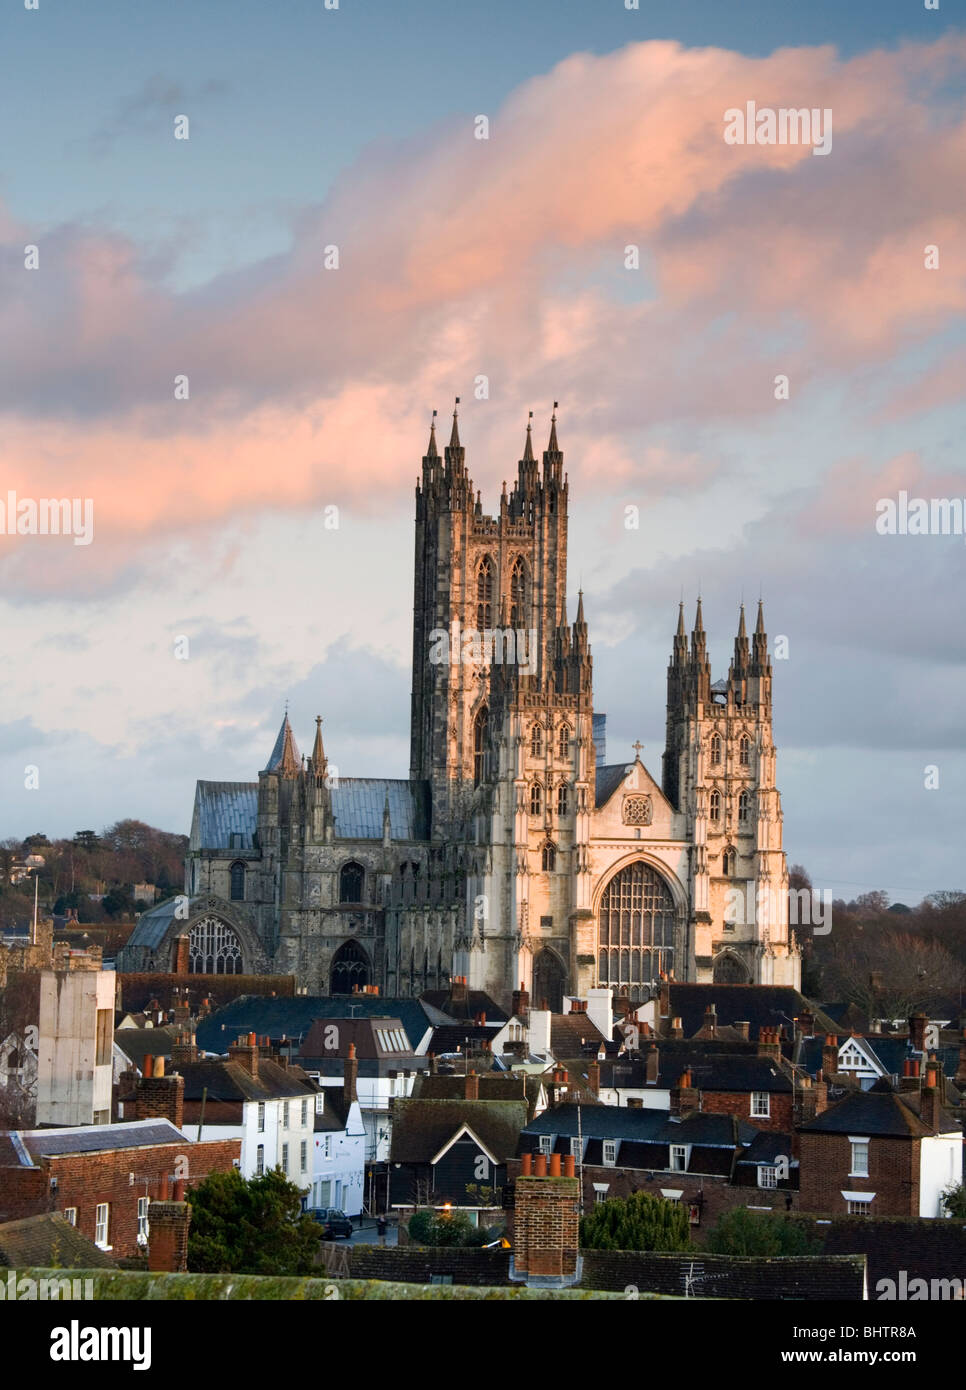 Die Kathedrale von Canterbury bei Sonnenuntergang gesehen von der Westgate Towers, Kent, UK. Stockfoto